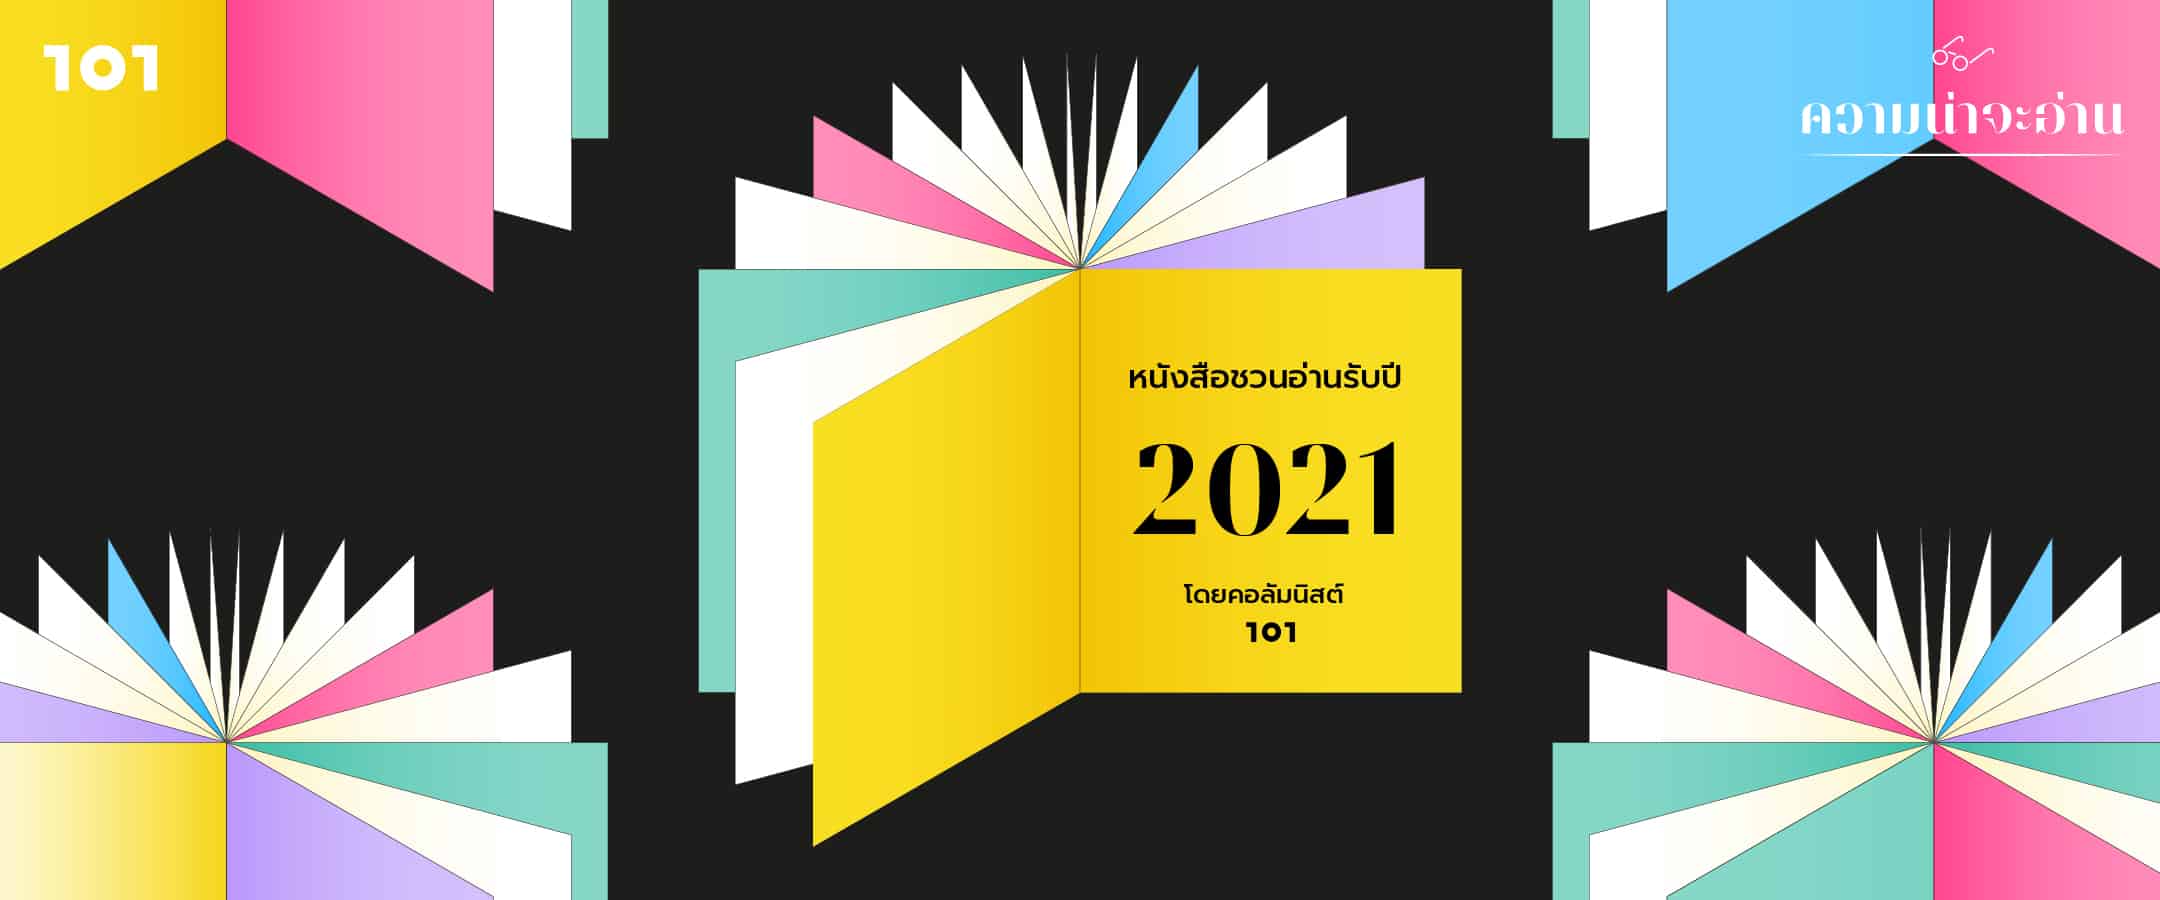 ความน่าจะอ่าน : หนังสือชวนอ่านรับปี 2021 โดยคอลัมนิสต์ 101